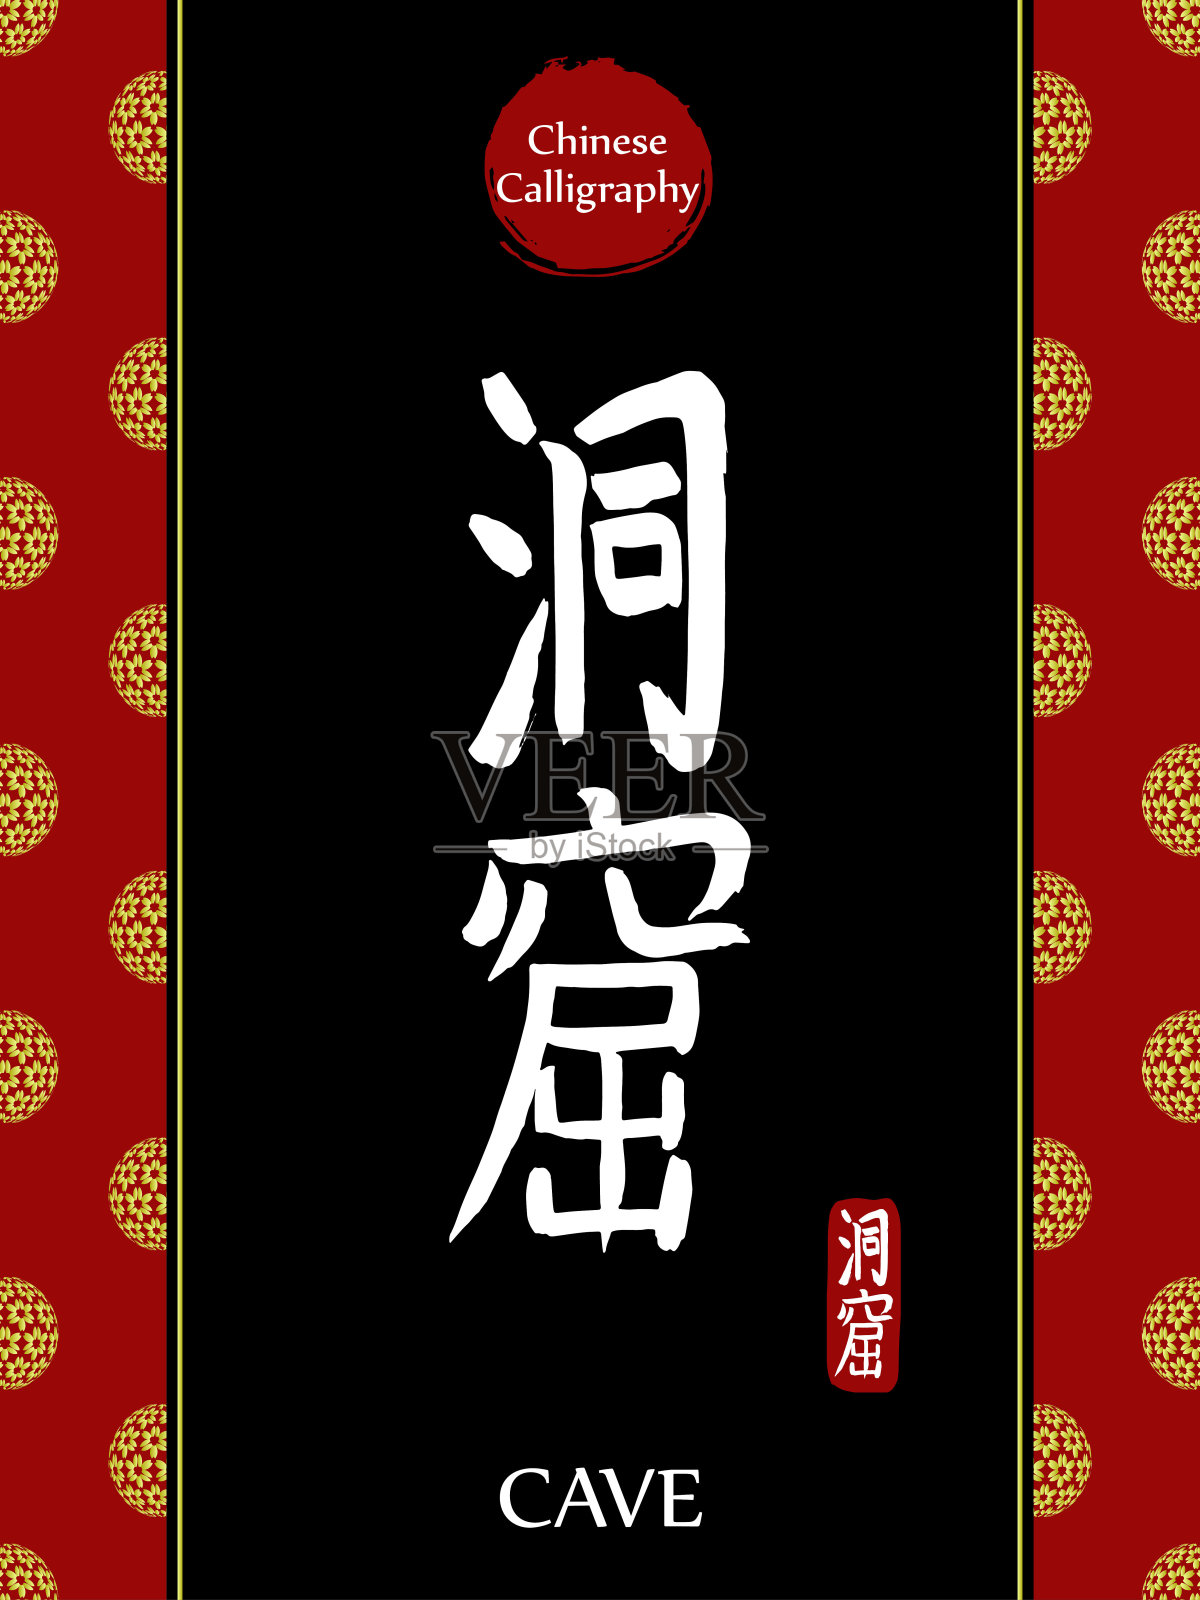 中国书法象形文字翻译:洞穴。亚洲金花球农历新年图案。向量中国符号在黑色背景。手绘图画文字。毛笔书法插画图片素材